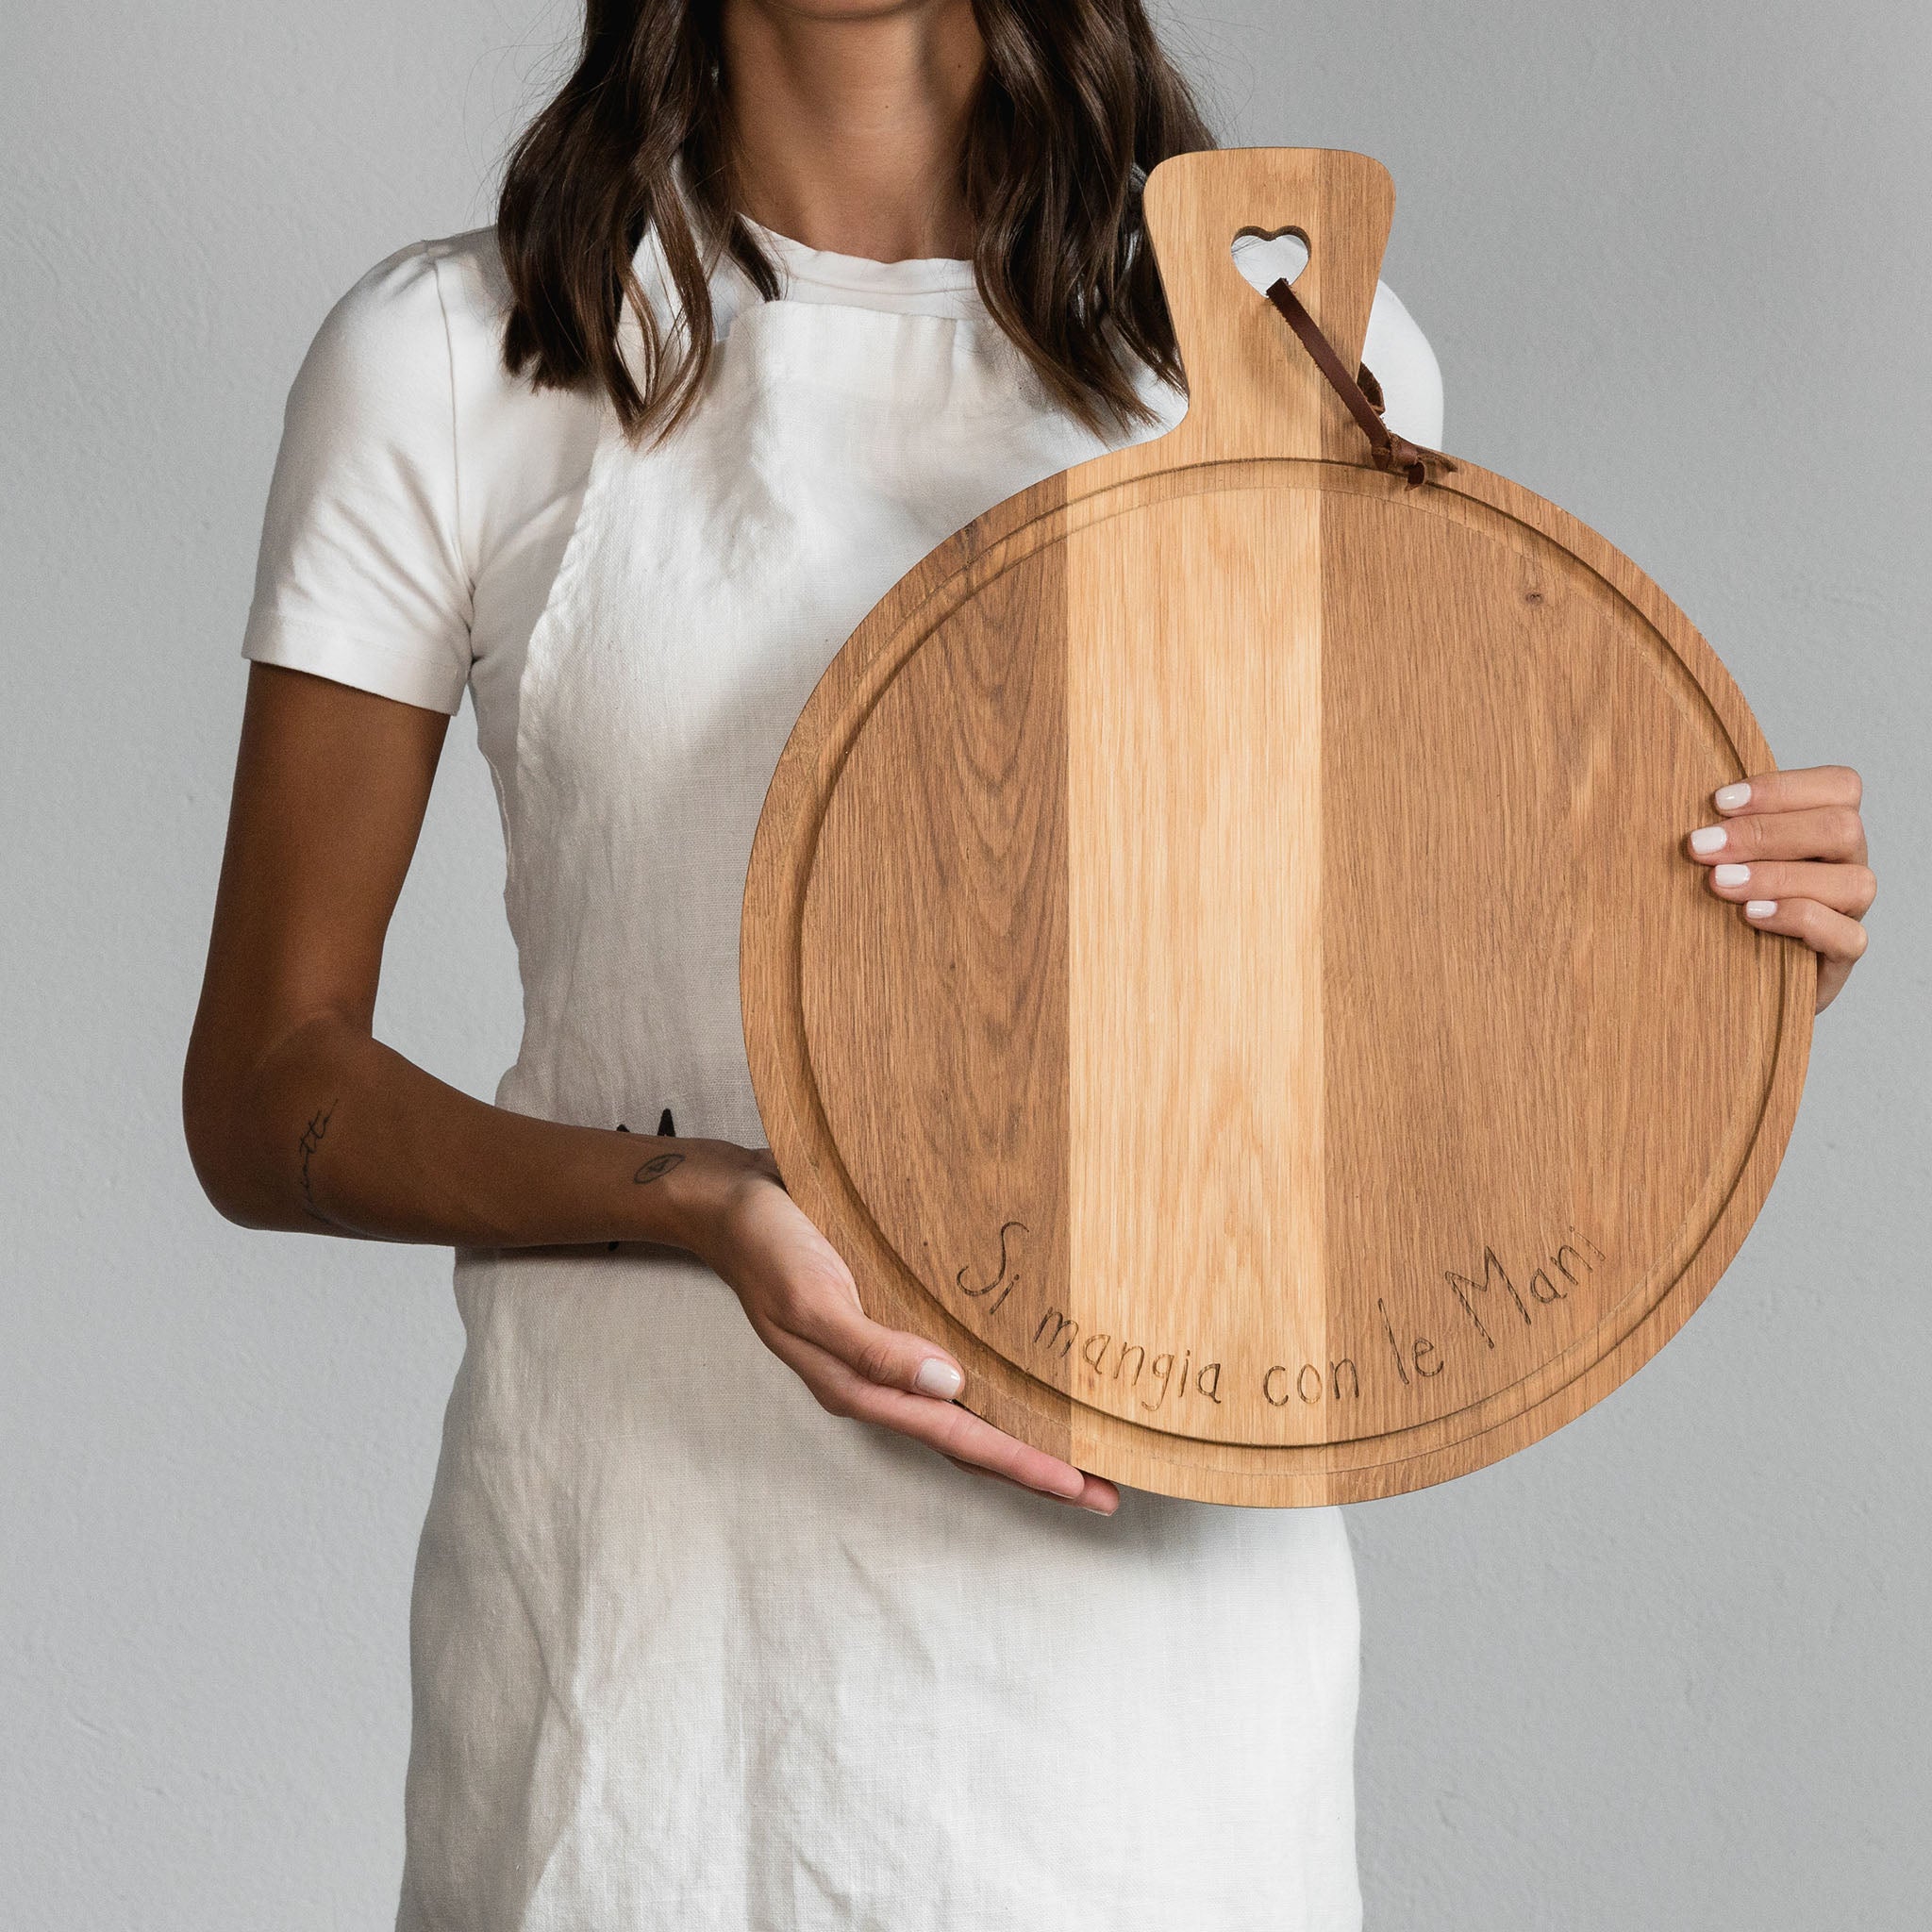 Si Mangia Con Le Mani round-shaped cutting board